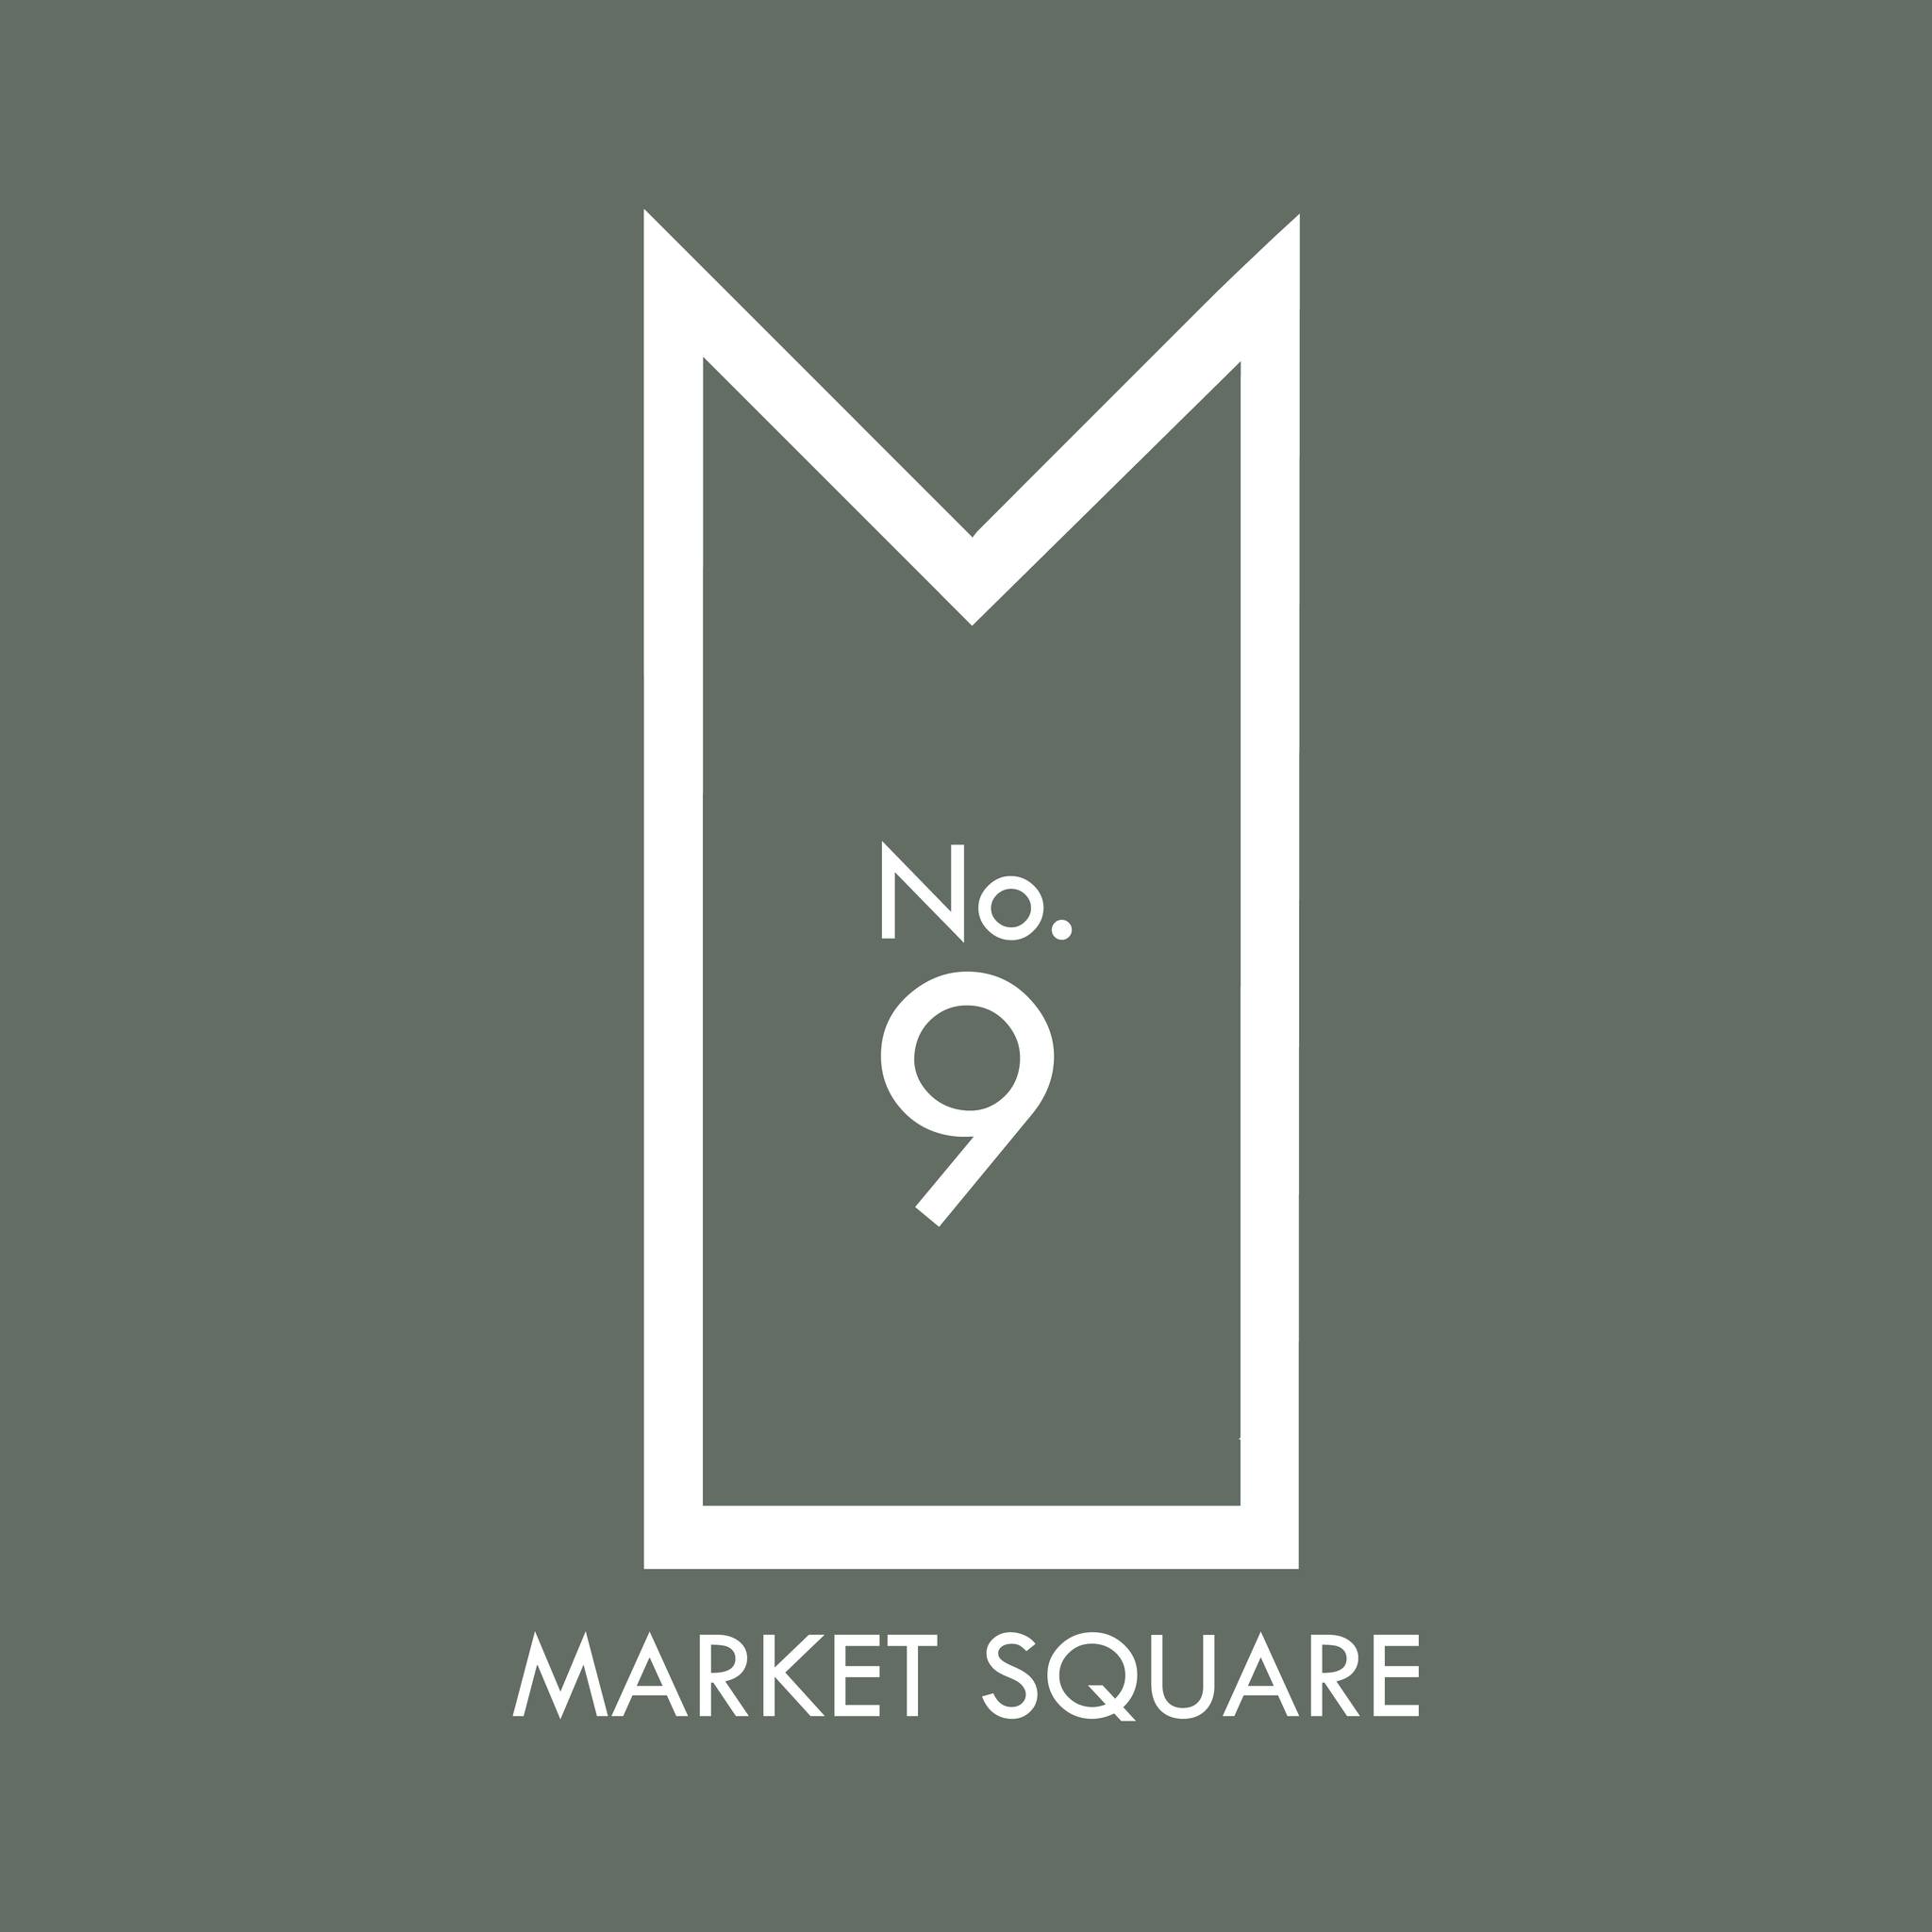 No. 9 Market Square 